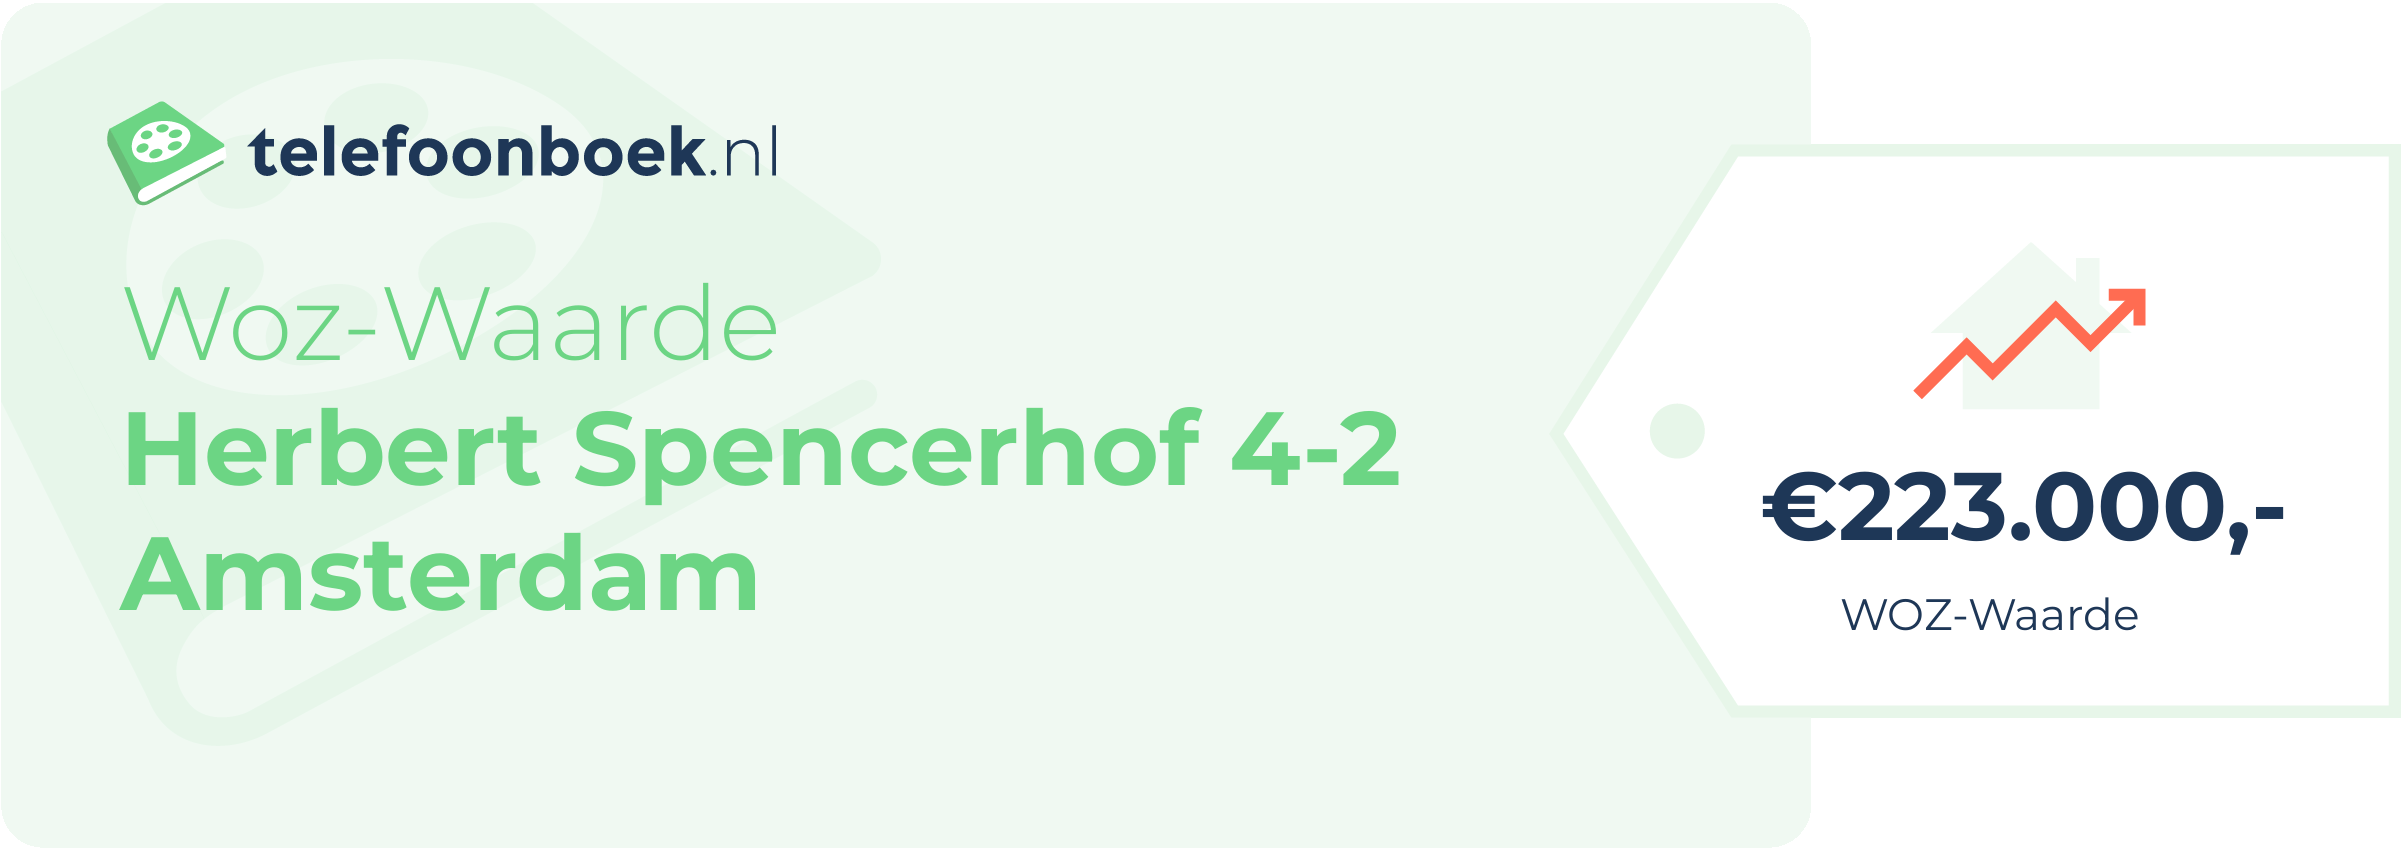 WOZ-waarde Herbert Spencerhof 4-2 Amsterdam